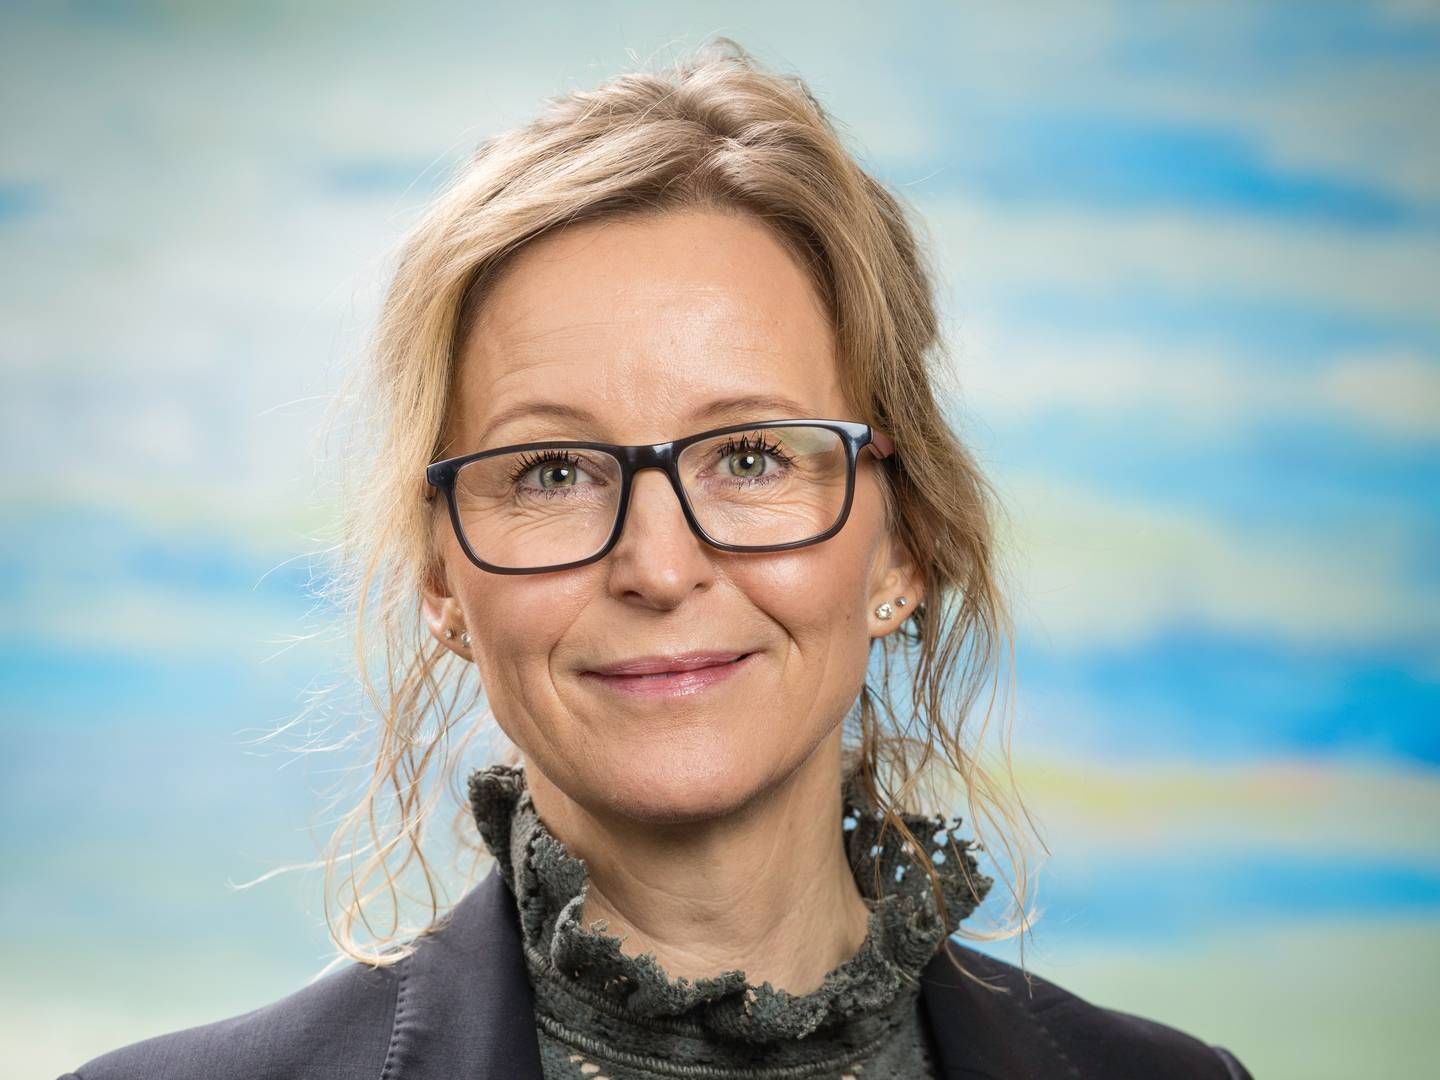 Annelise Arboe Sommer skal som ny adm. direktør for busoperatøren Umove stå i spidsen for en strategiændring. | Foto: Umove, Pr